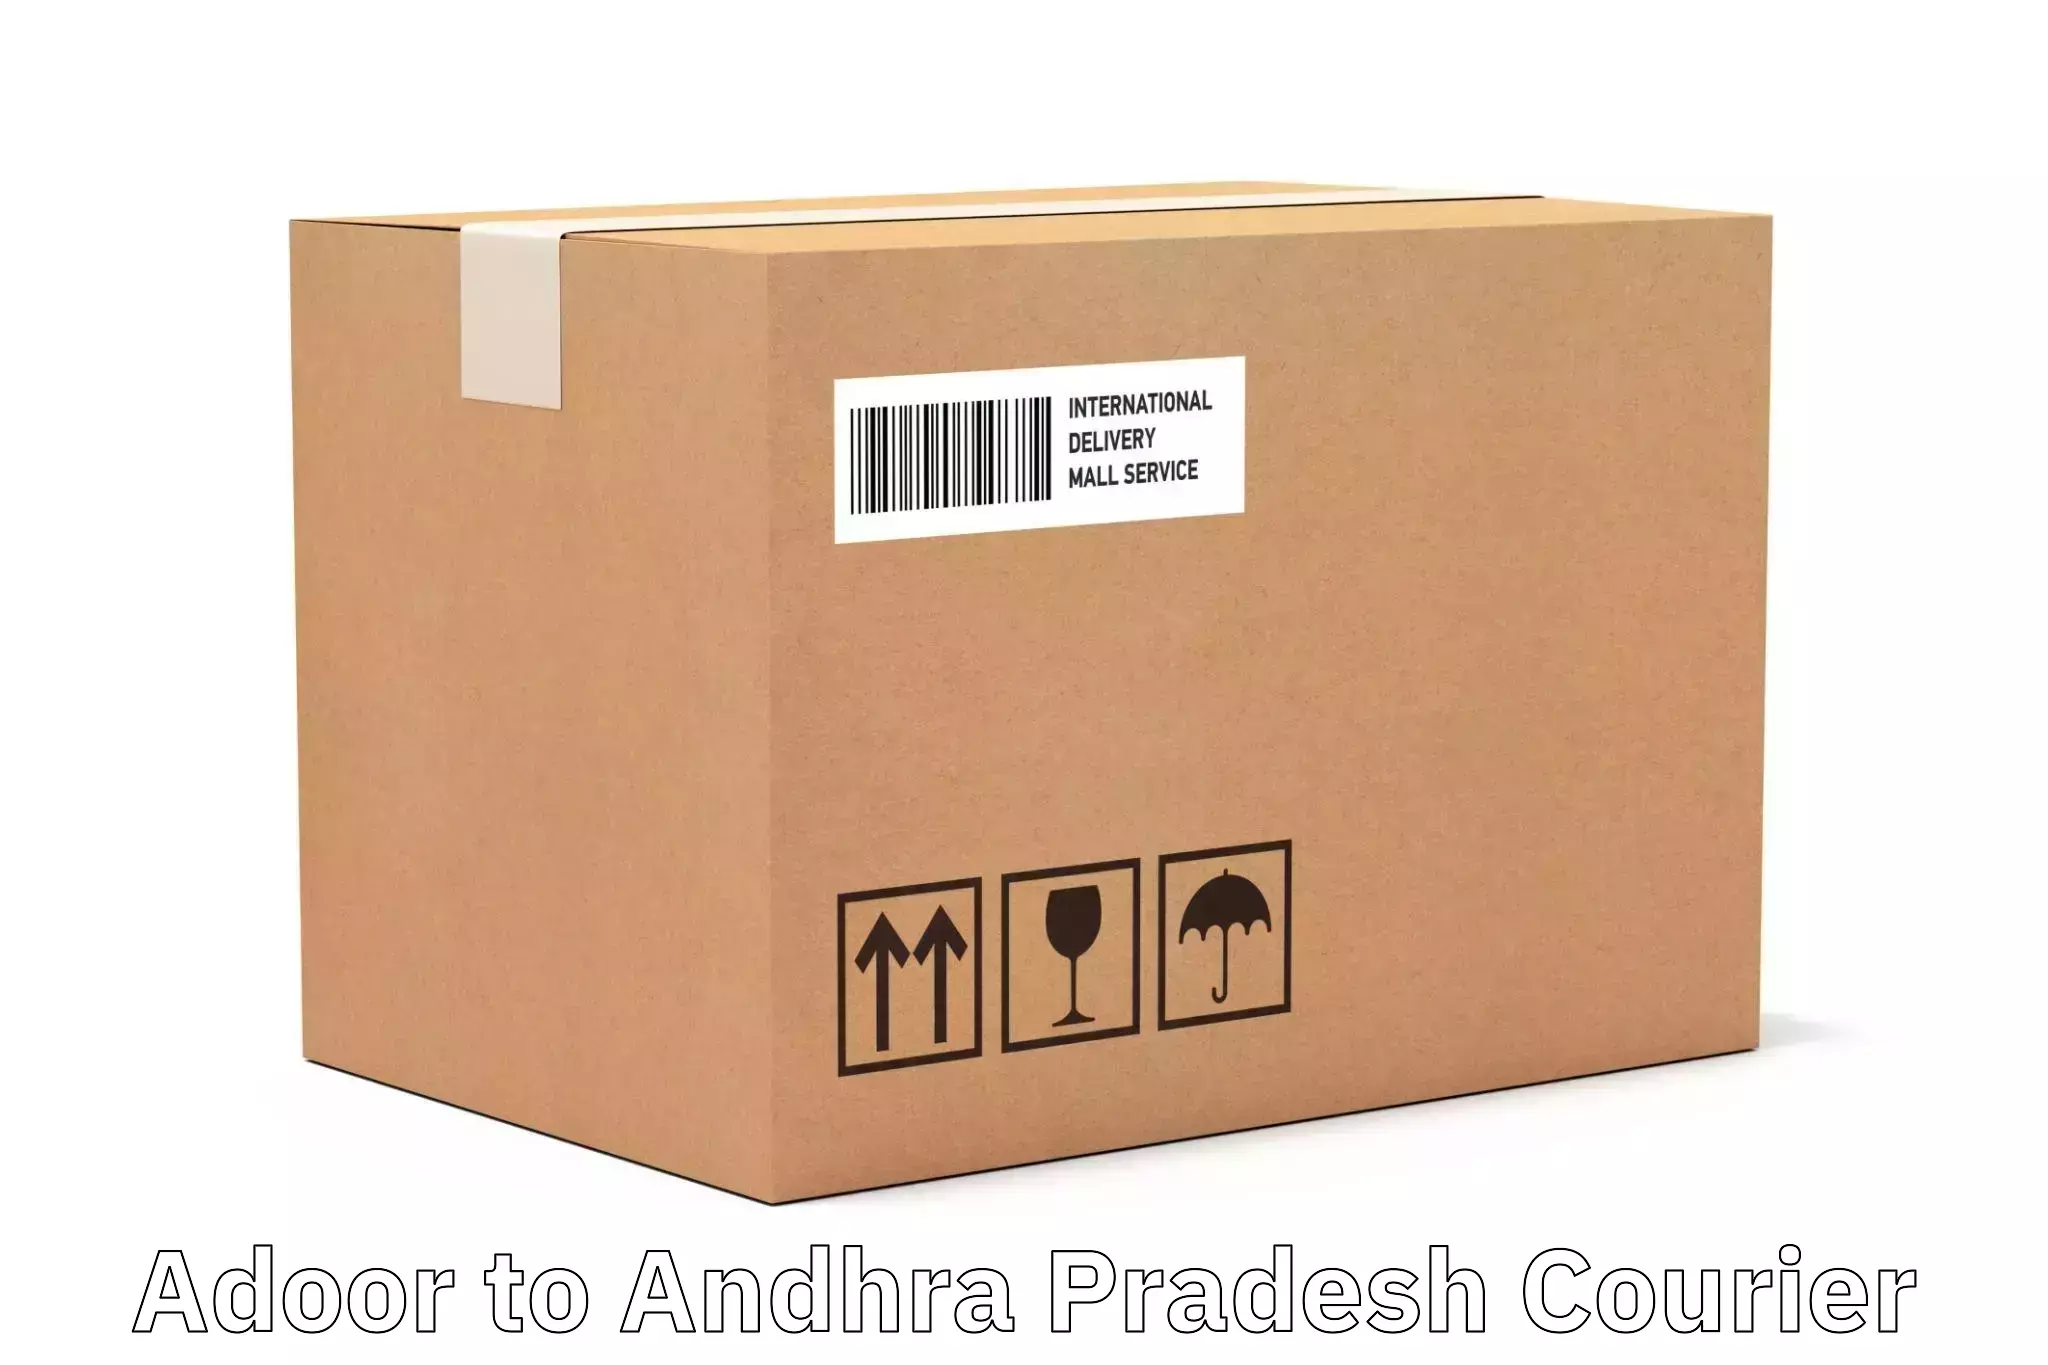 Express package handling Adoor to Ichchapuram